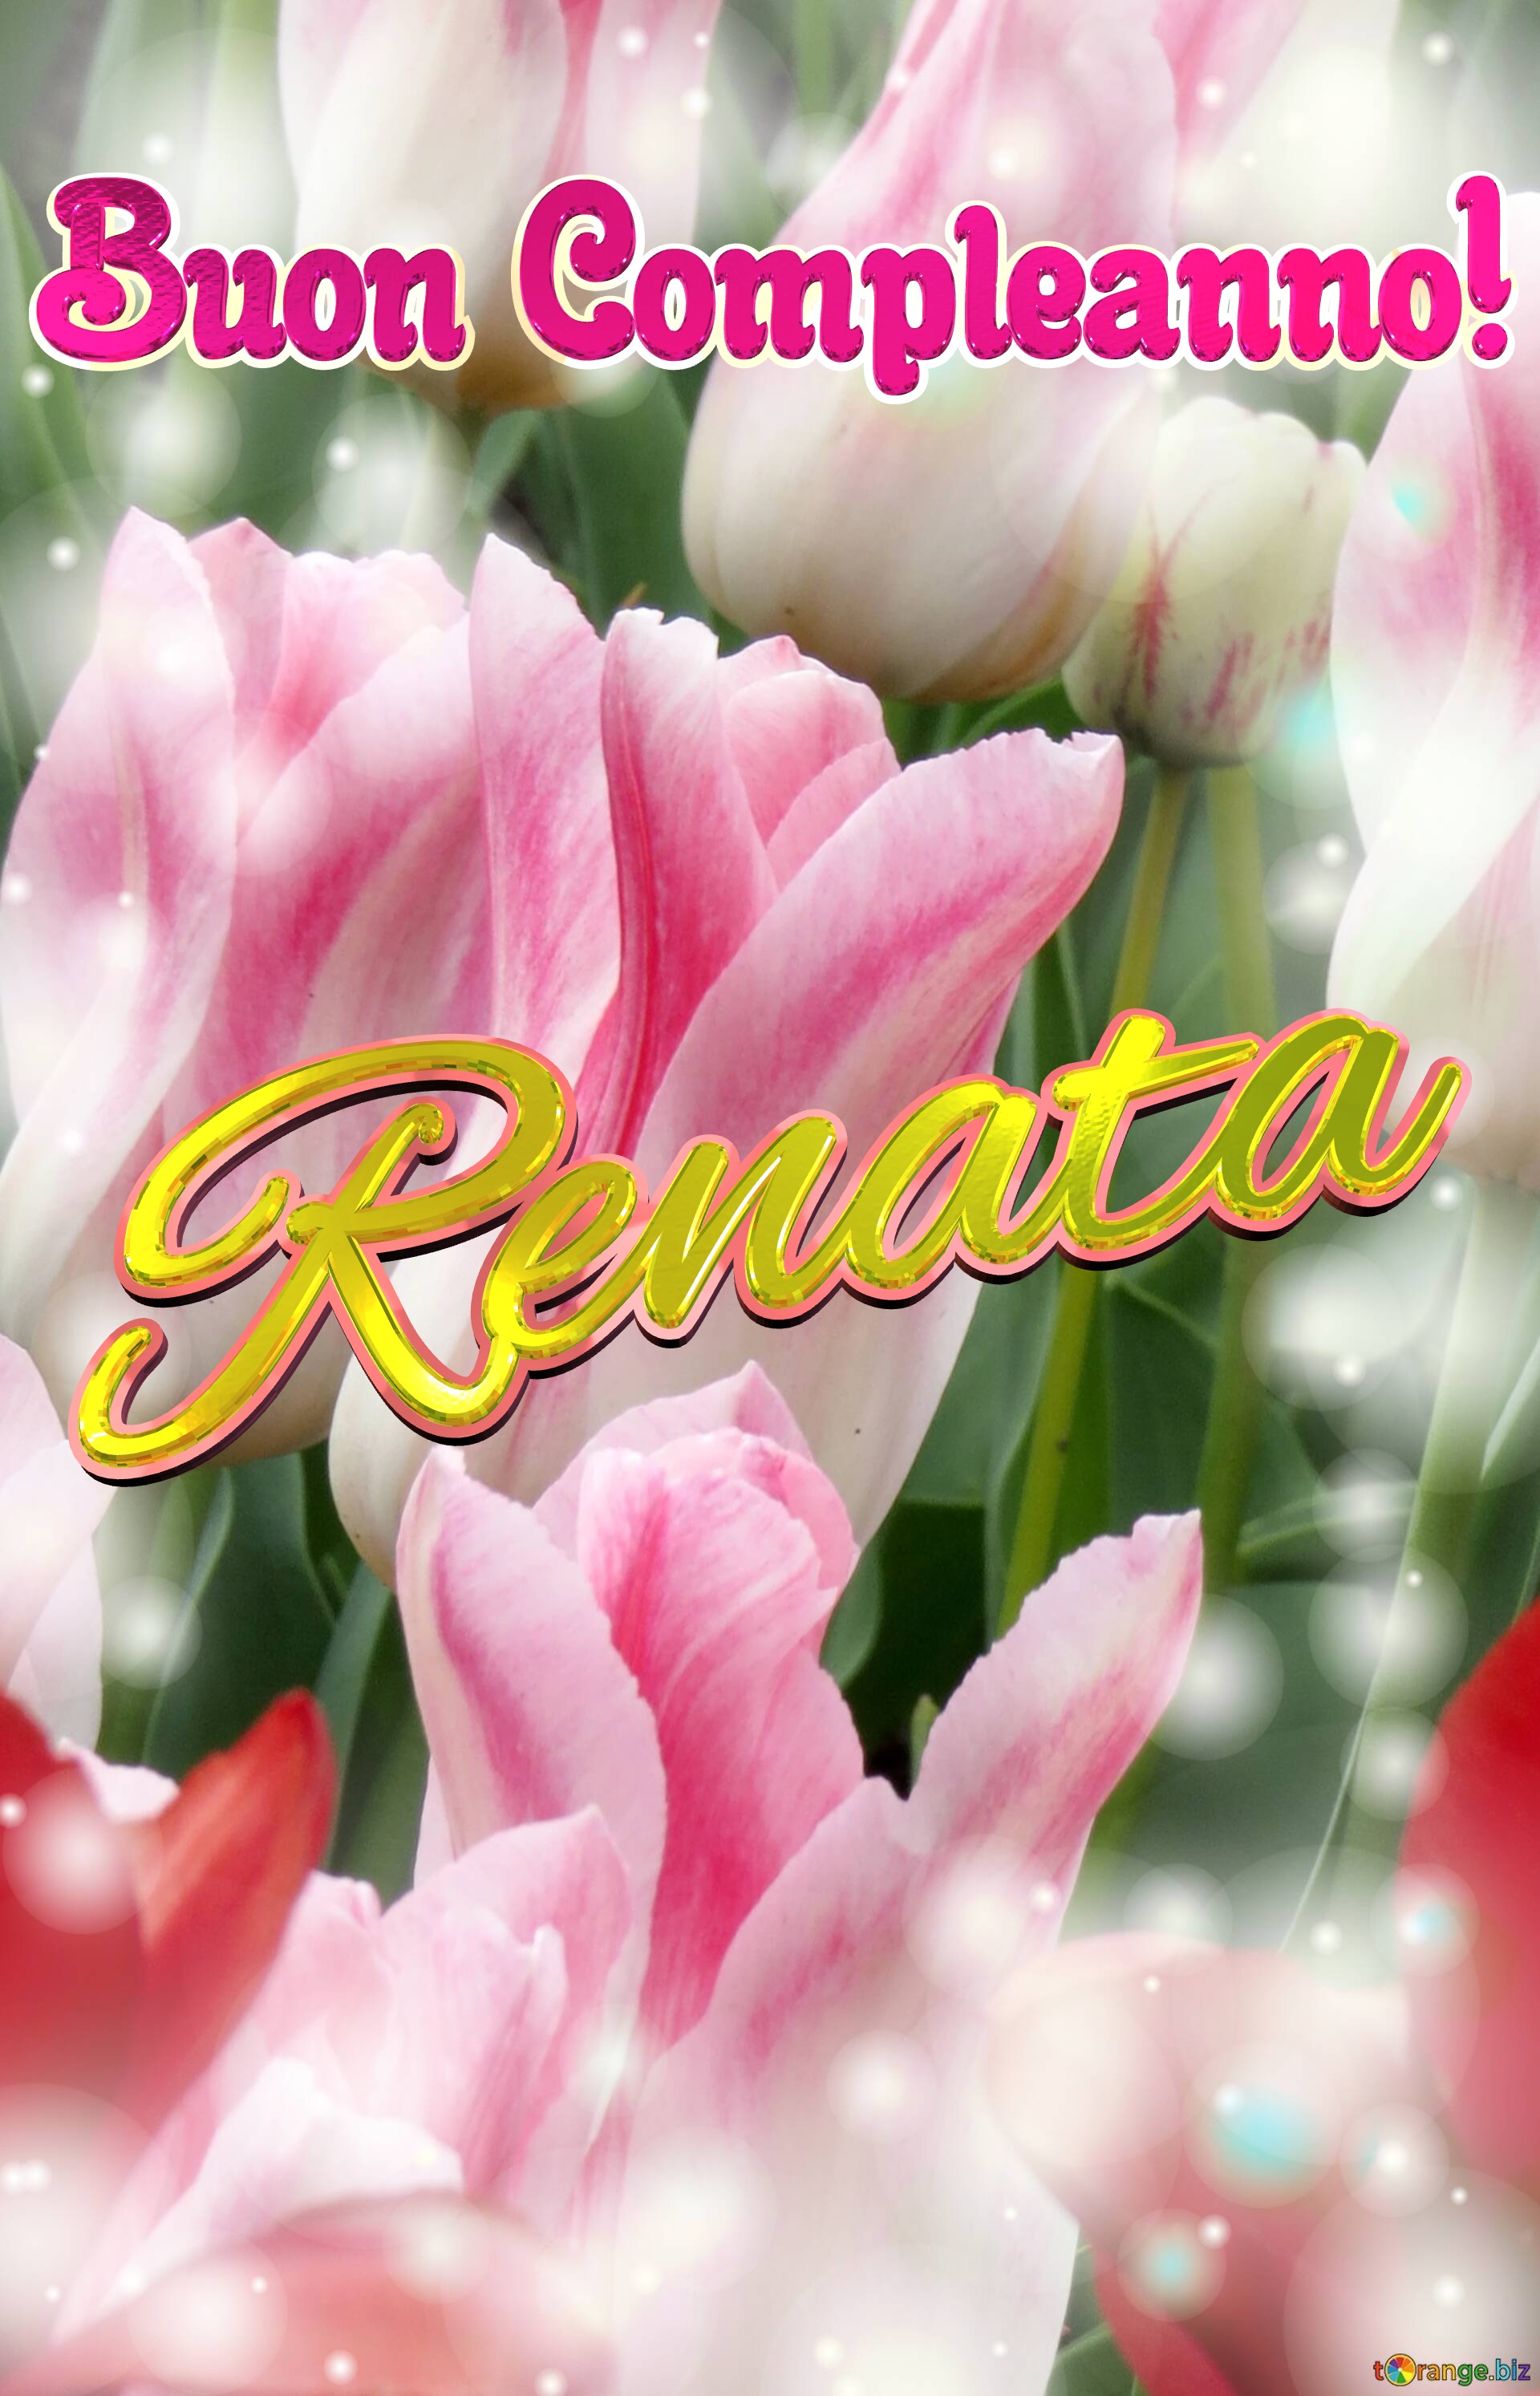 Buon Compleanno! Renata  La bellezza dei tulipani è un richiamo alla purezza della vita, auguri per una vita pura e bella. №0